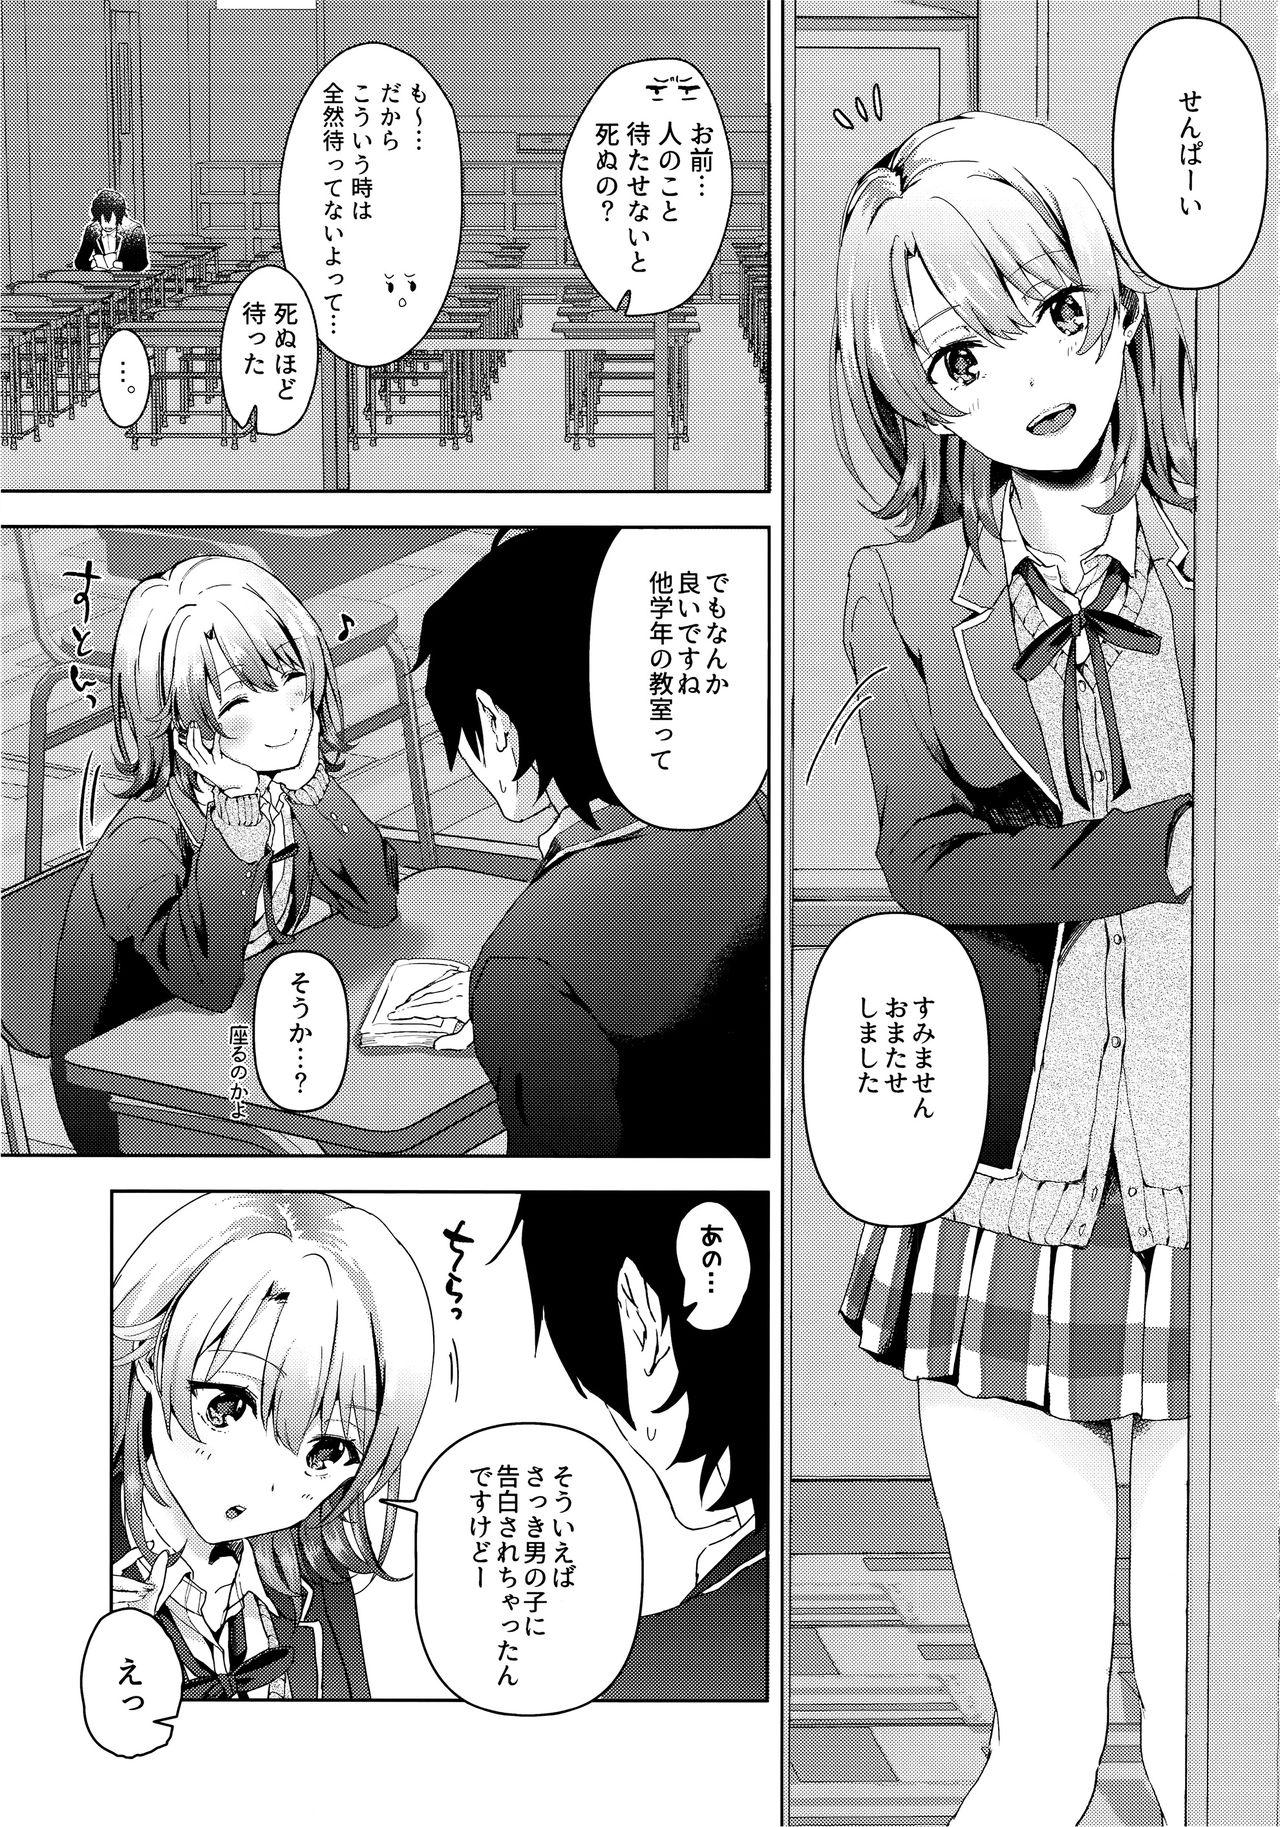 Onlyfans Yahari Ore wa Isshiki Iroha no Shoujou de Odoritsuzukeru. - Yahari ore no seishun love come wa machigatteiru Doctor Sex - Page 2